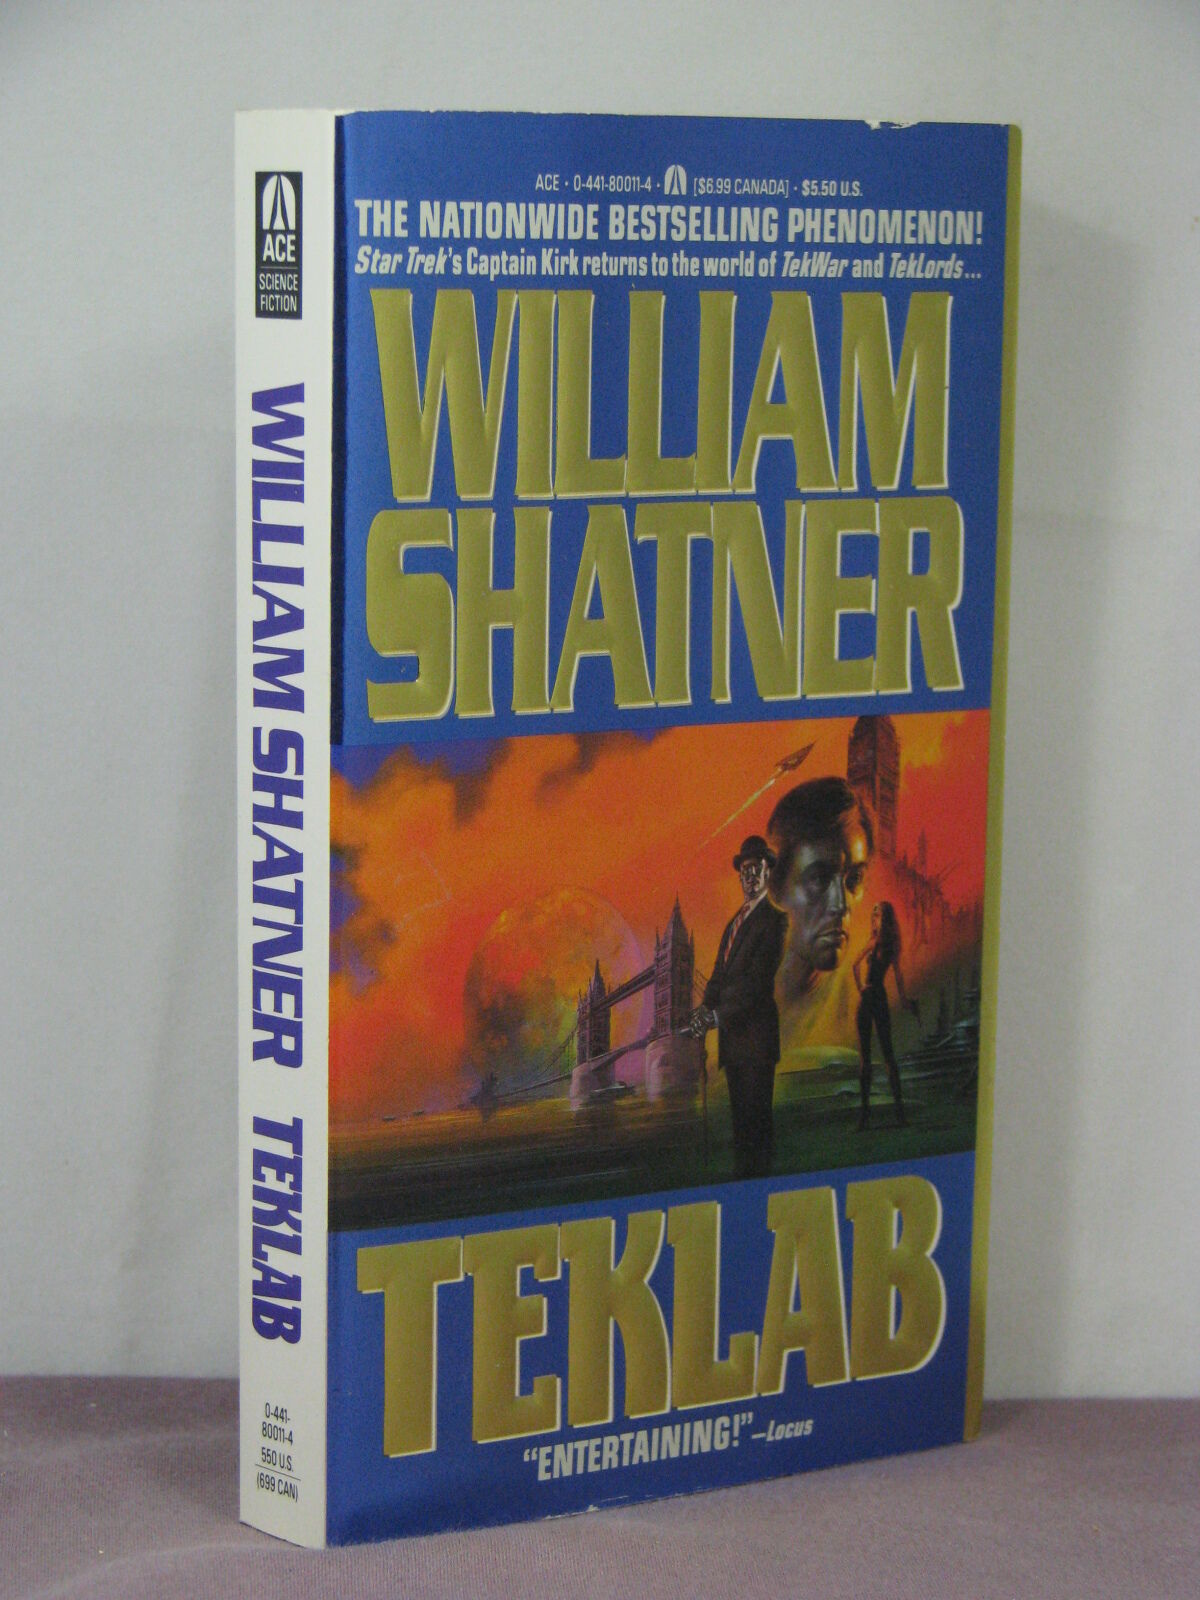 1st PB,signed by author Goulart, Tekwar 3: Teklab by William Shatner,Ron Goulart